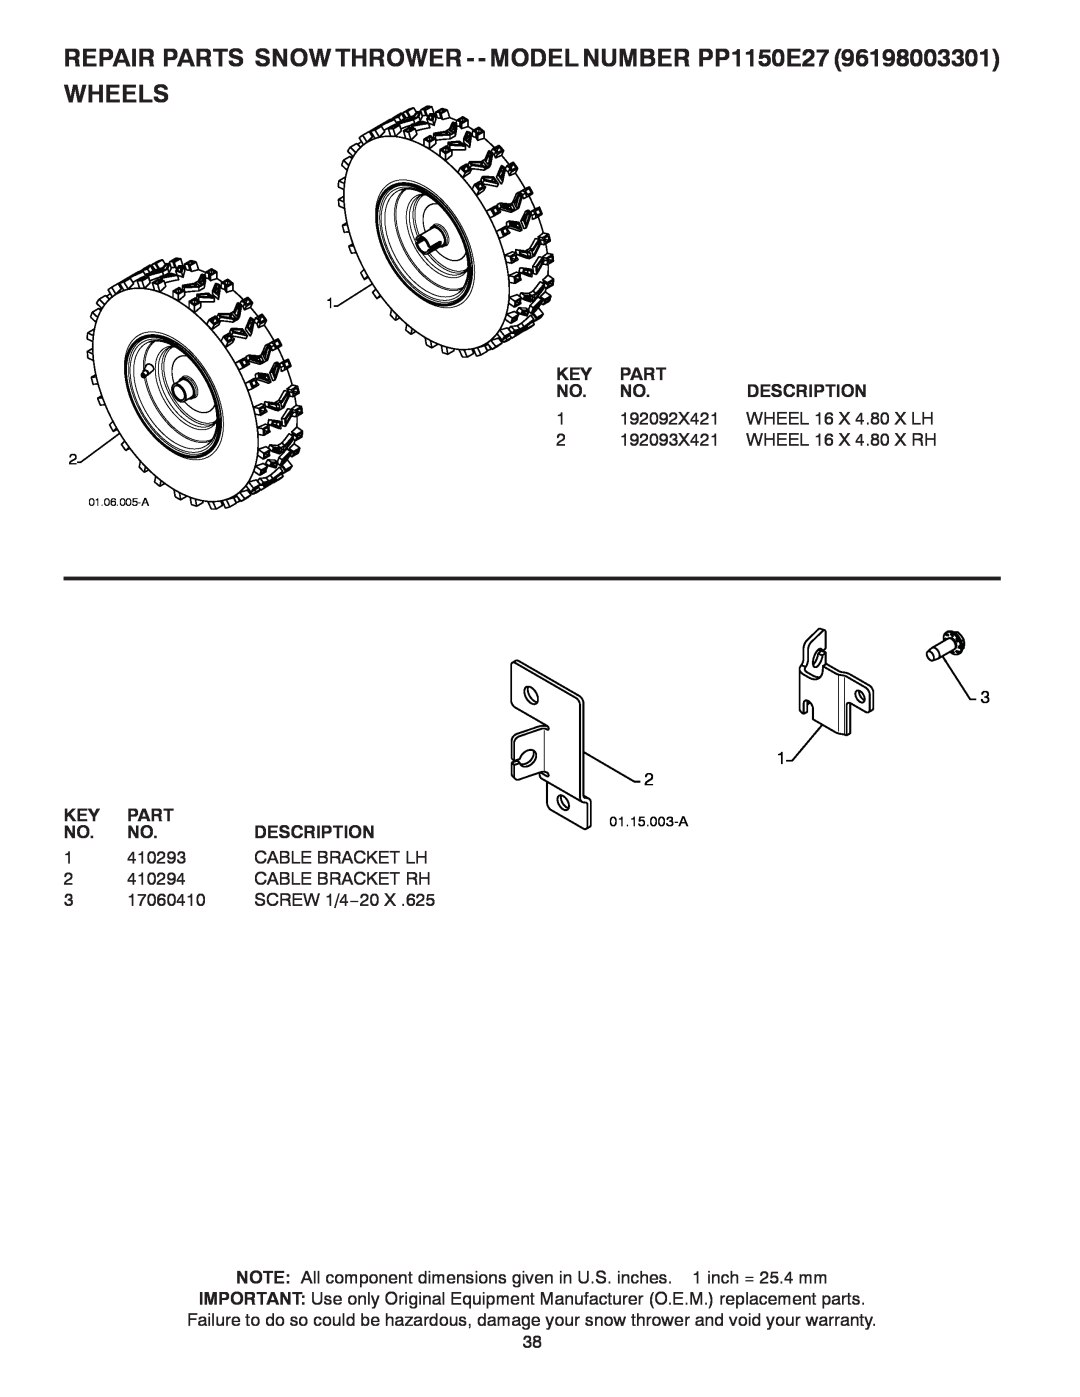 Poulan 429264, 96198003301 owner manual Wheels, Part, Description 